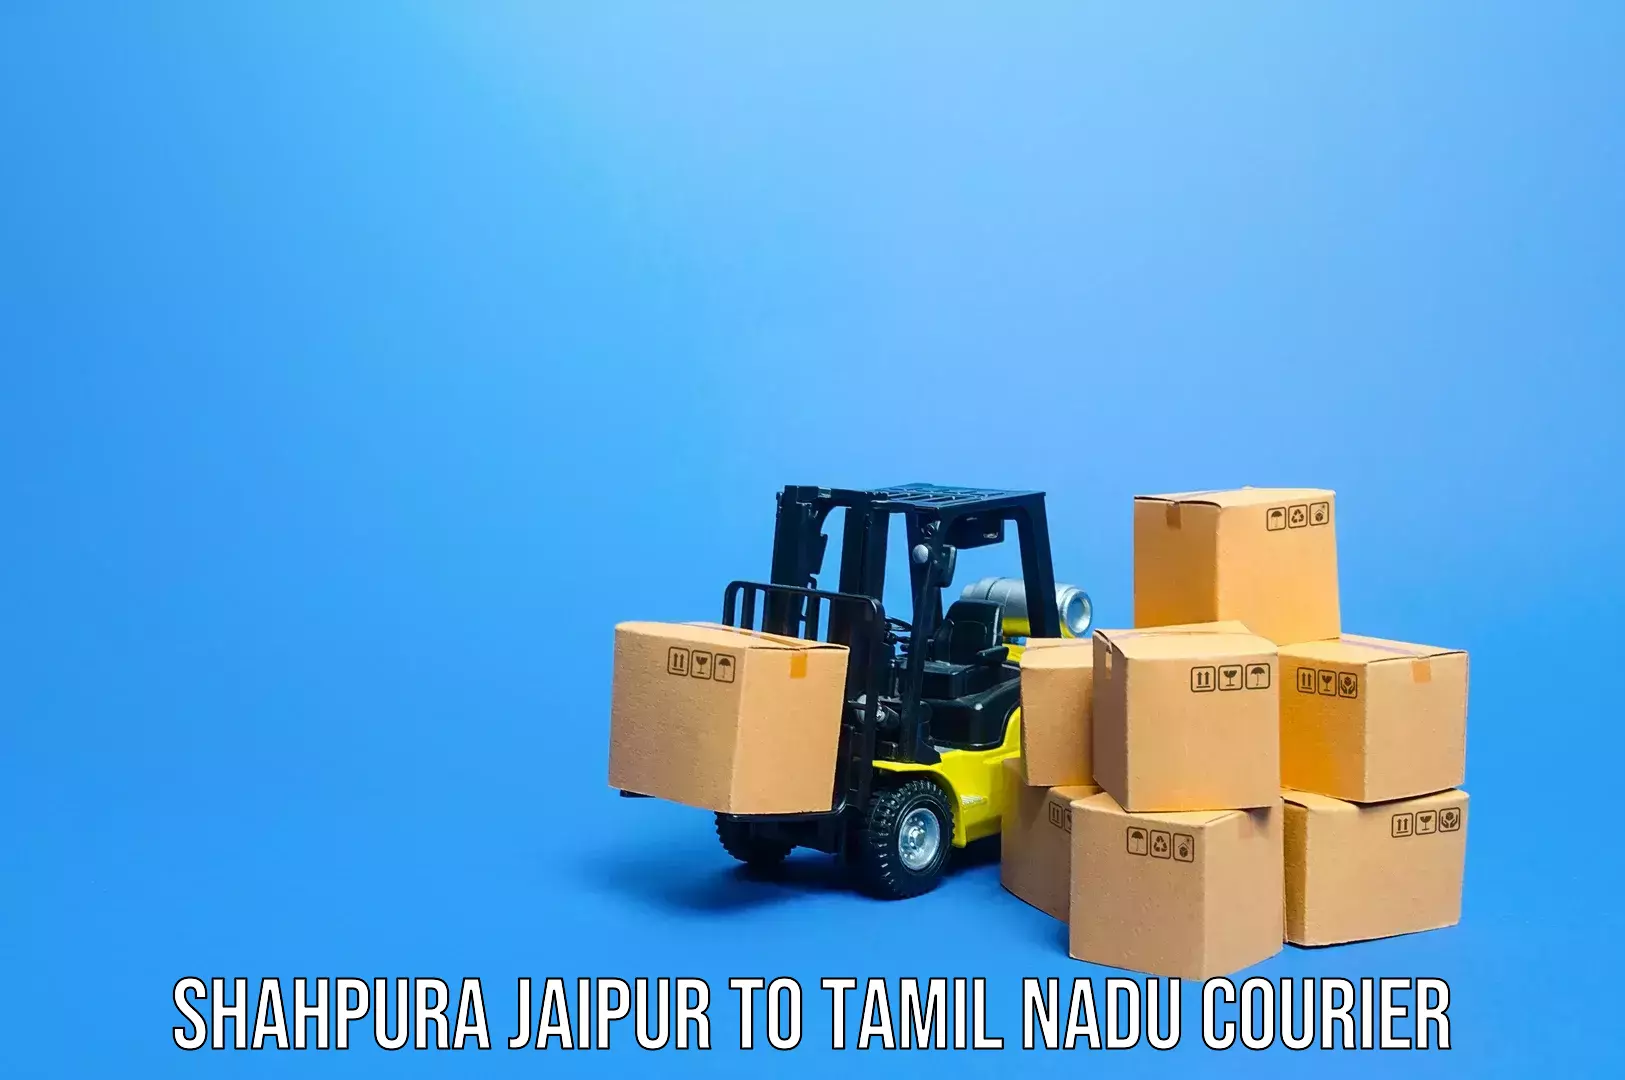 Luggage delivery system Shahpura Jaipur to Udumalaipettai